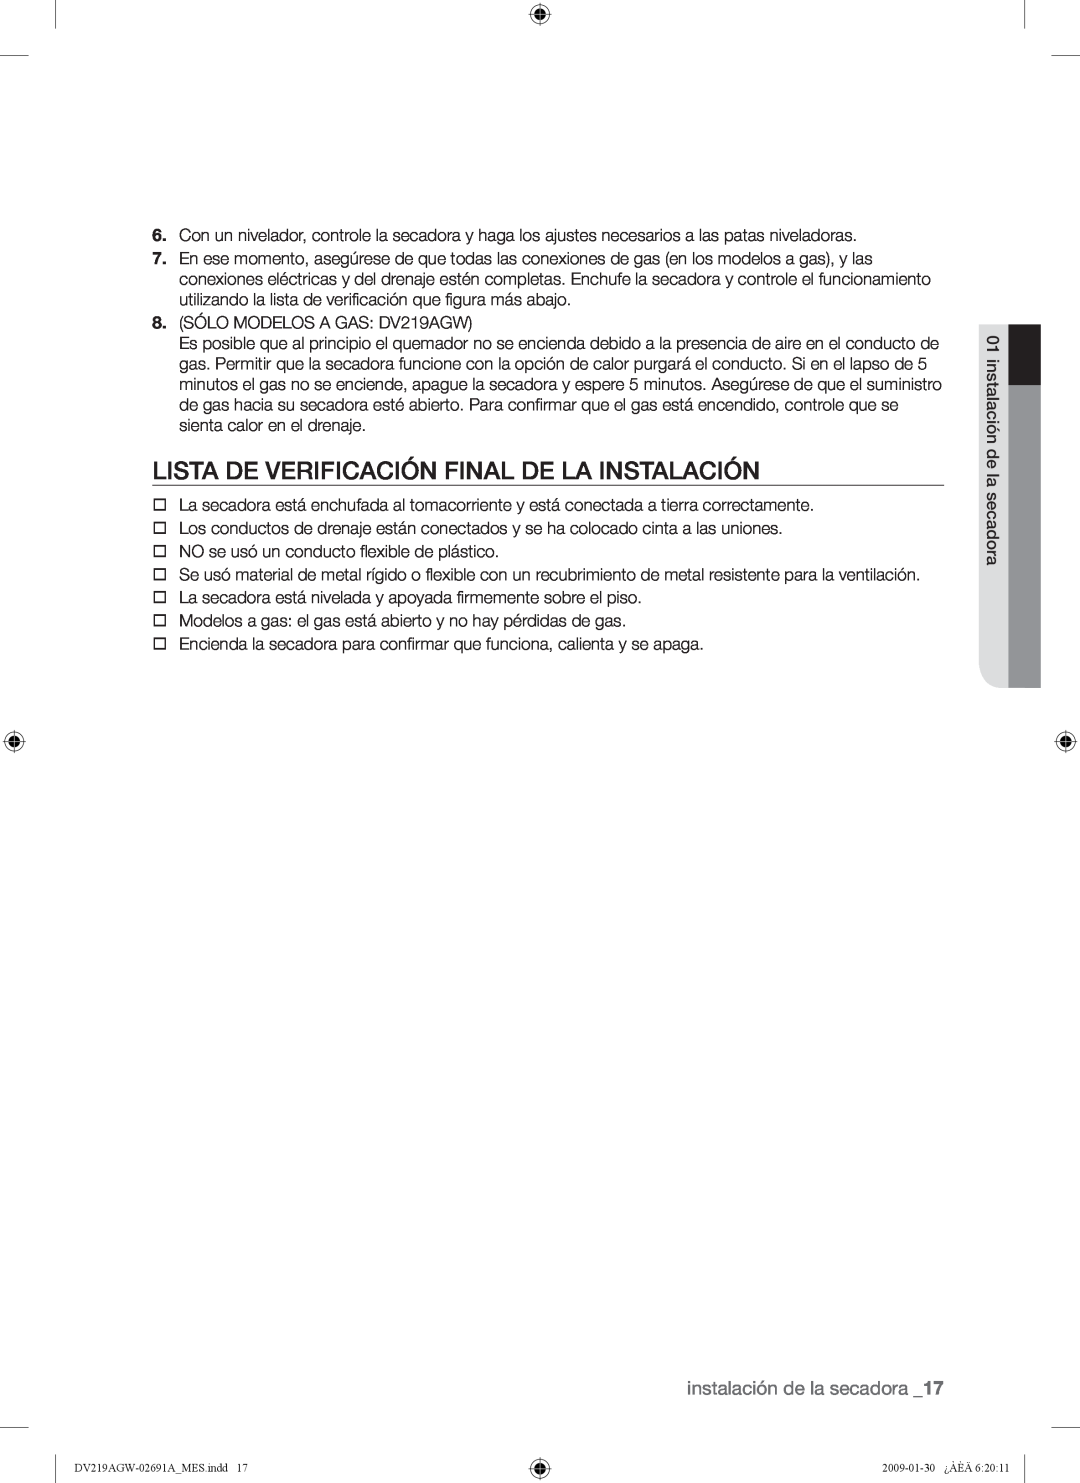 Samsung DV219AE*, DV219AGW, DV219AG* user manual Lista De Verificación Final De La Instalación, instalación de la secadora 